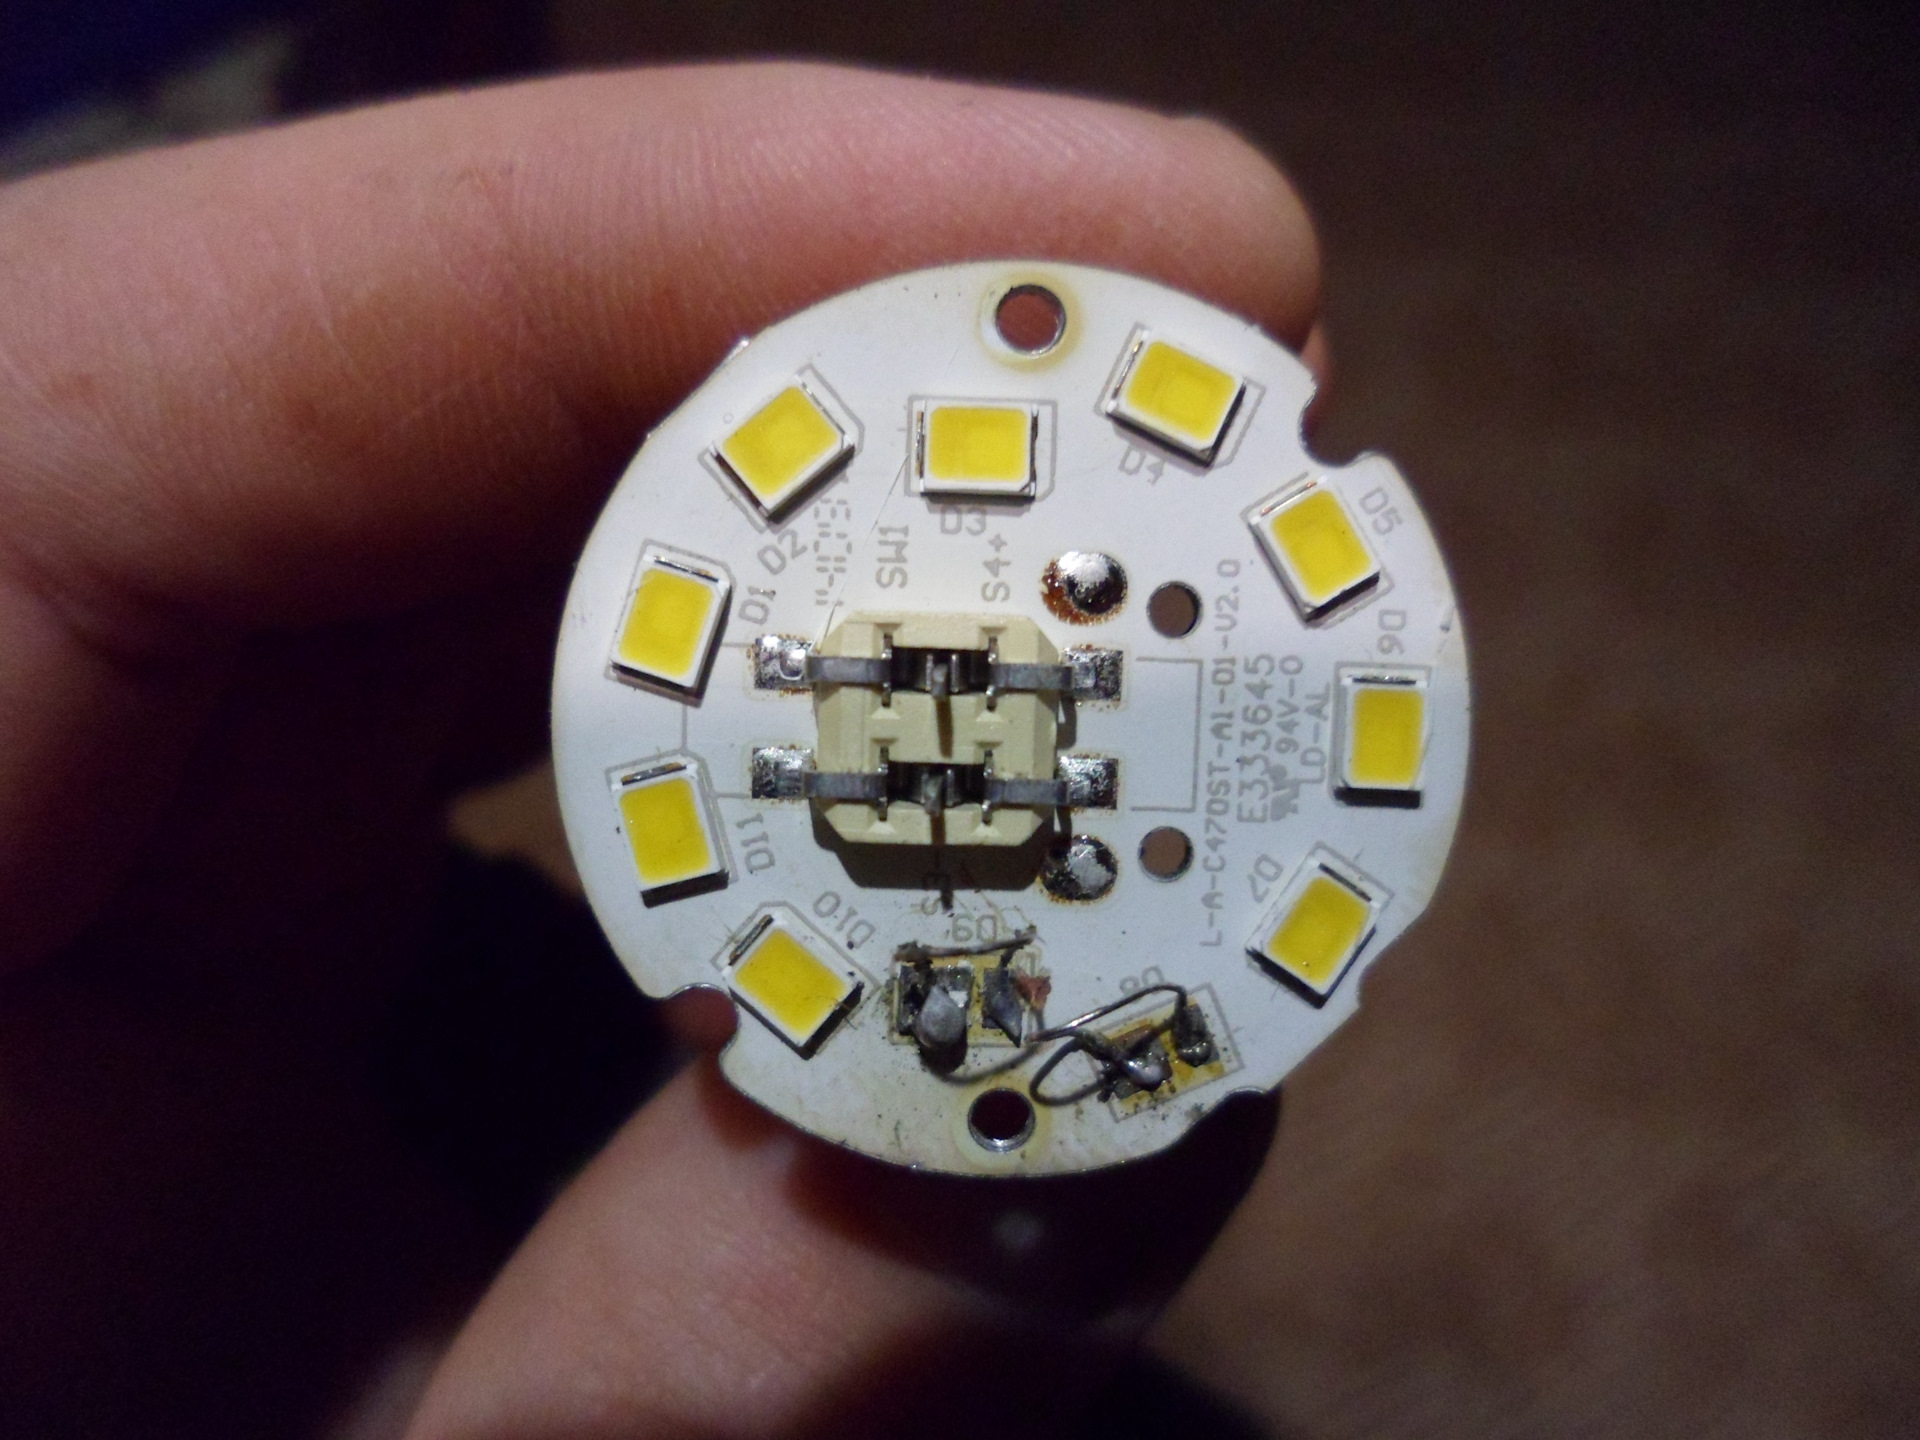 Светодиодная лампа ремонт своими руками на 220в. Плата внутри светодиодной лампы 220в. Светодиодная лампа 220 вольт разборка. Как разобрать диодную лампочку на 220в. Разбираем светодиодную лампу 220 вольт.